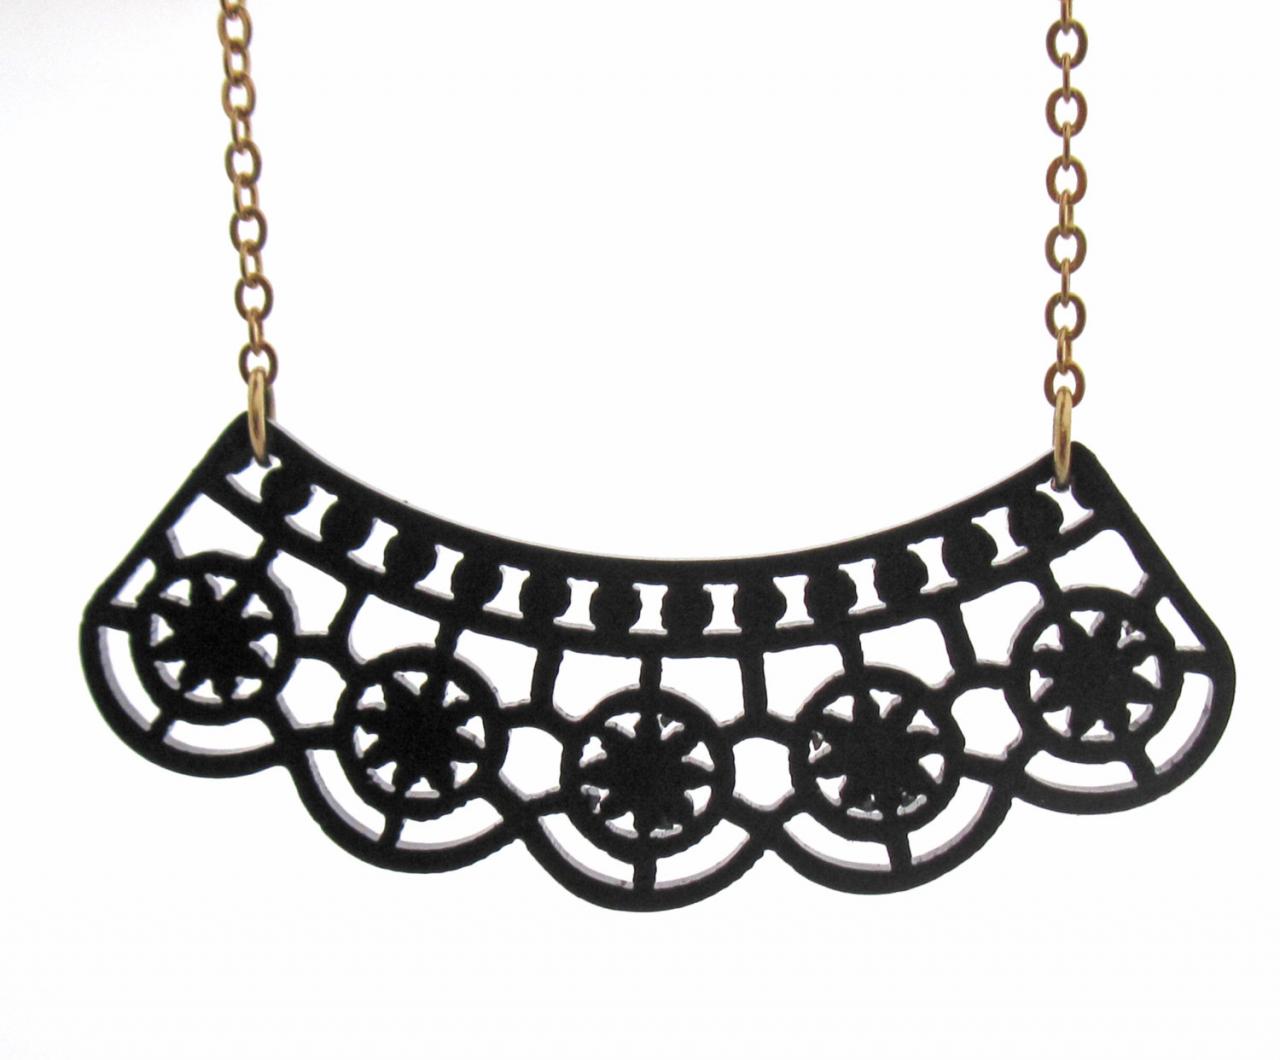 Black Lace Necklace - Minimalist Jewelry - Art Jewelry - Gift For Her - Cocktail Jewelry - Party Jewelry - Prom Jewelry - Elegant Jewelry